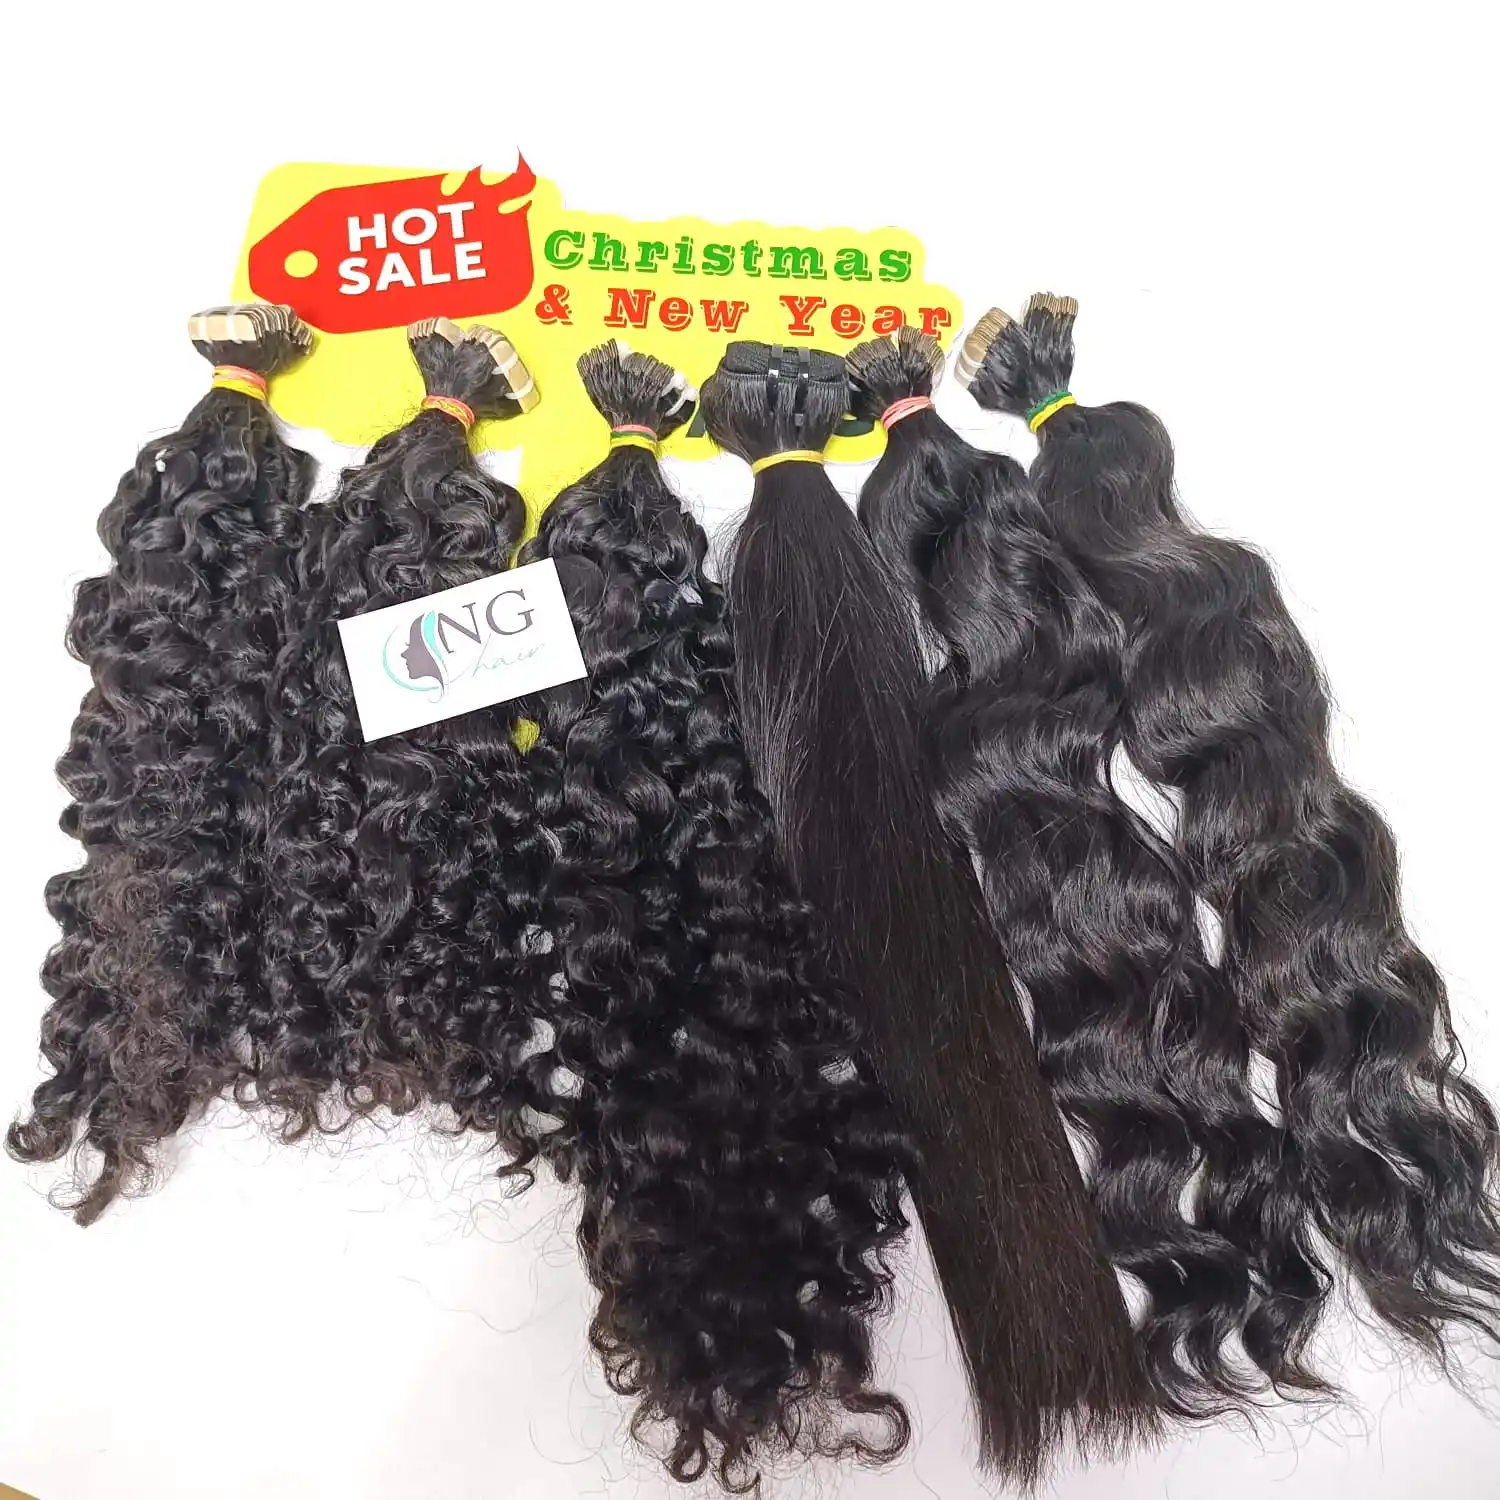 할인 모든 제품 100% 베트남어 인간의 머리, 풀 컬러 버마어 곱슬 머리 확장 환영 크리스마스.